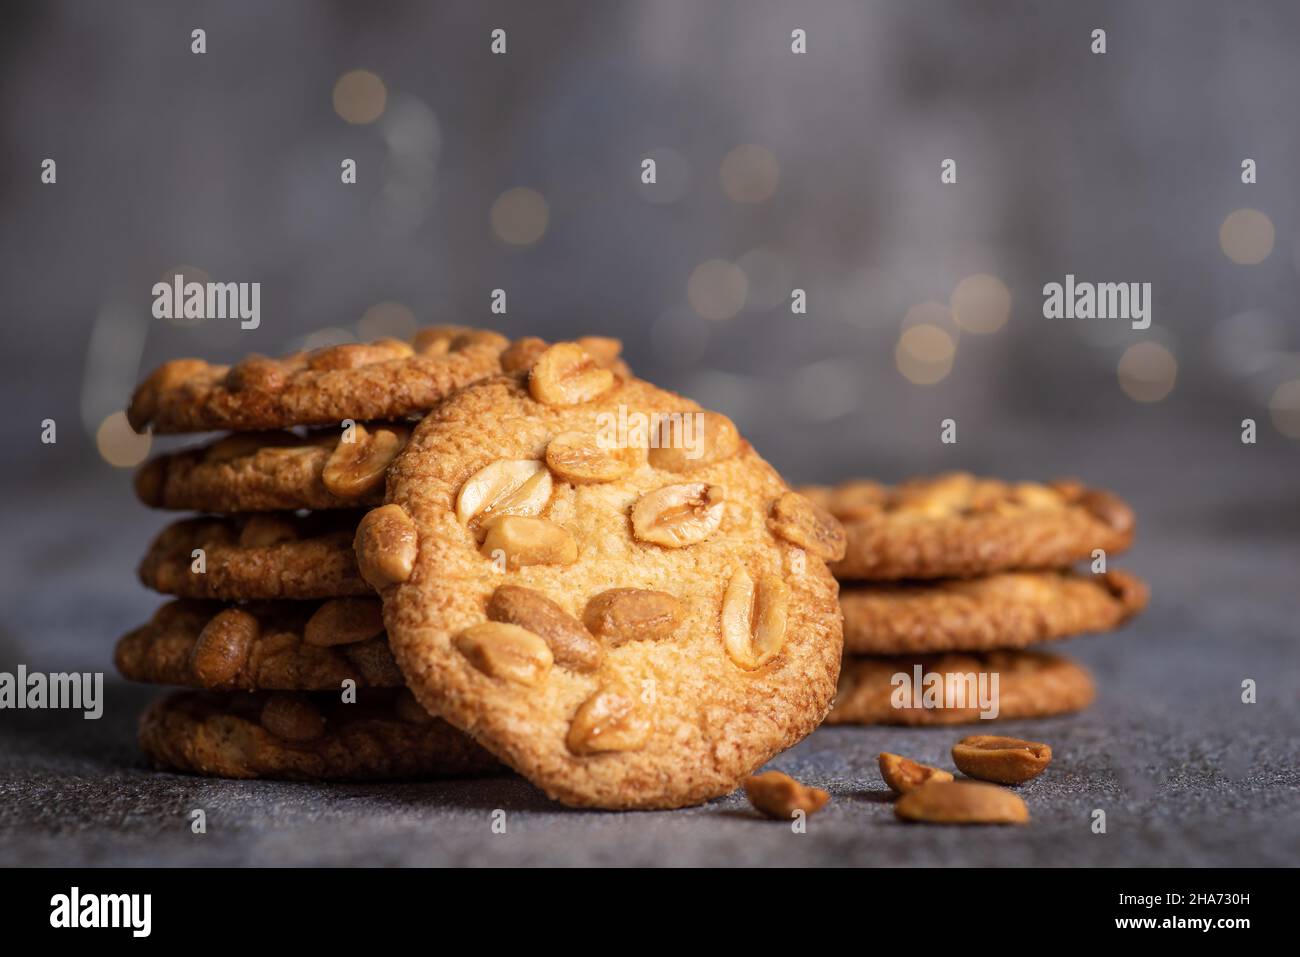 Pile de biscuits faits maison avec des arachides sur un tas sur fond gris Banque D'Images